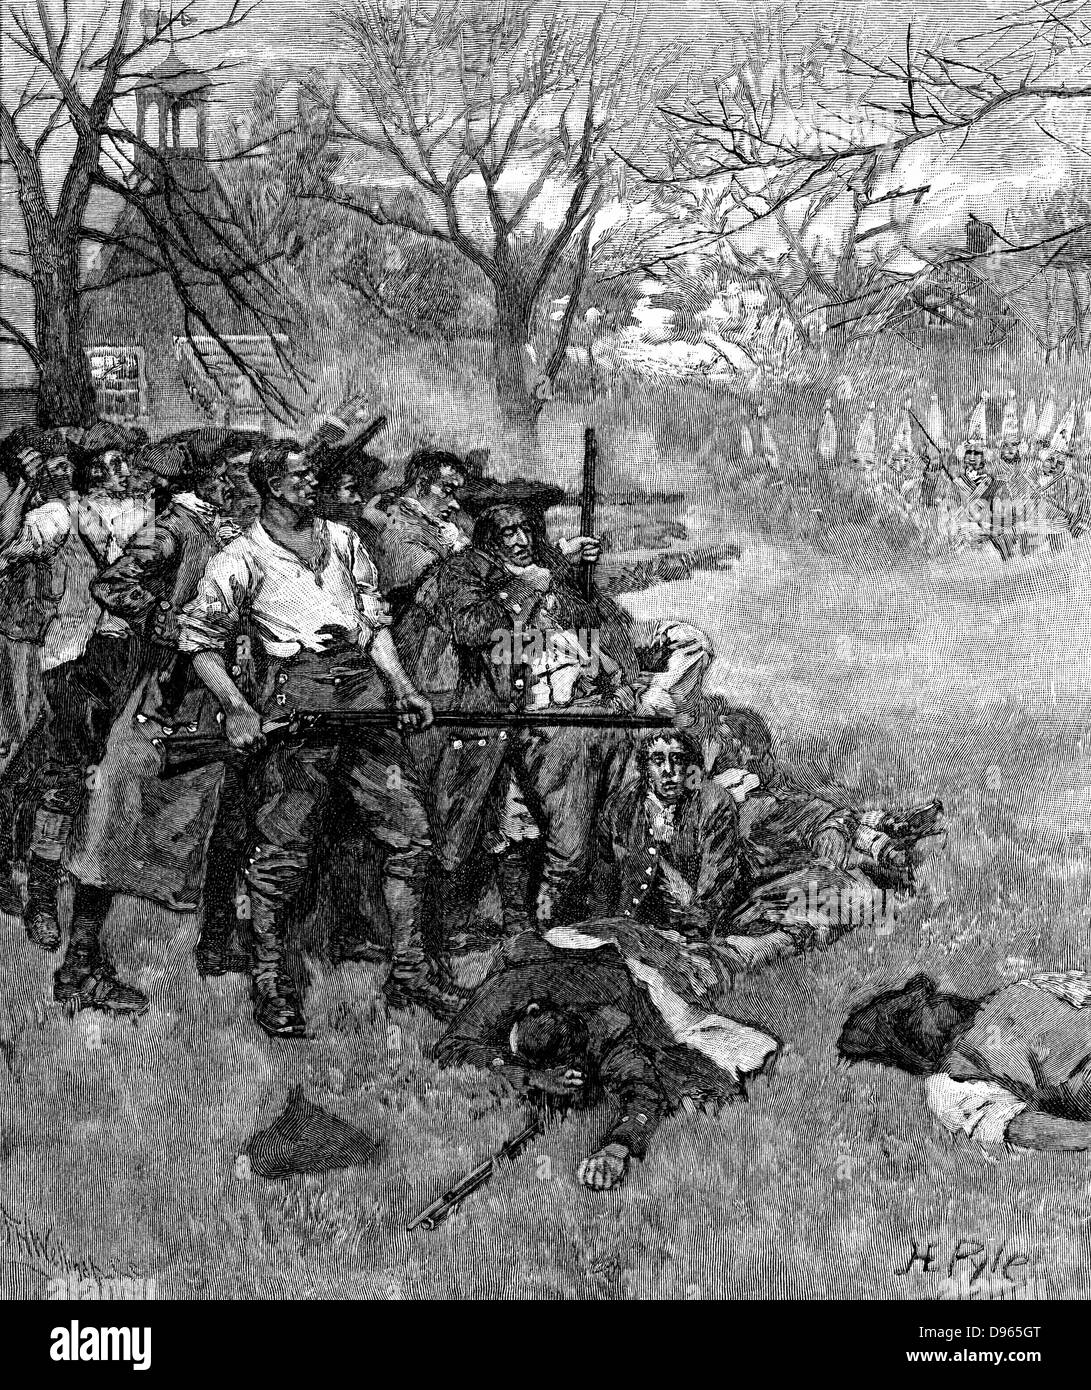 Guerre d'Indépendance américaine : Lexington Green - 38 patriotes américains de prendre une position contre 600 à 800 soldats britanniques. 7 américains tués, 9 blessés. La gravure sur bois de 1875. Banque D'Images